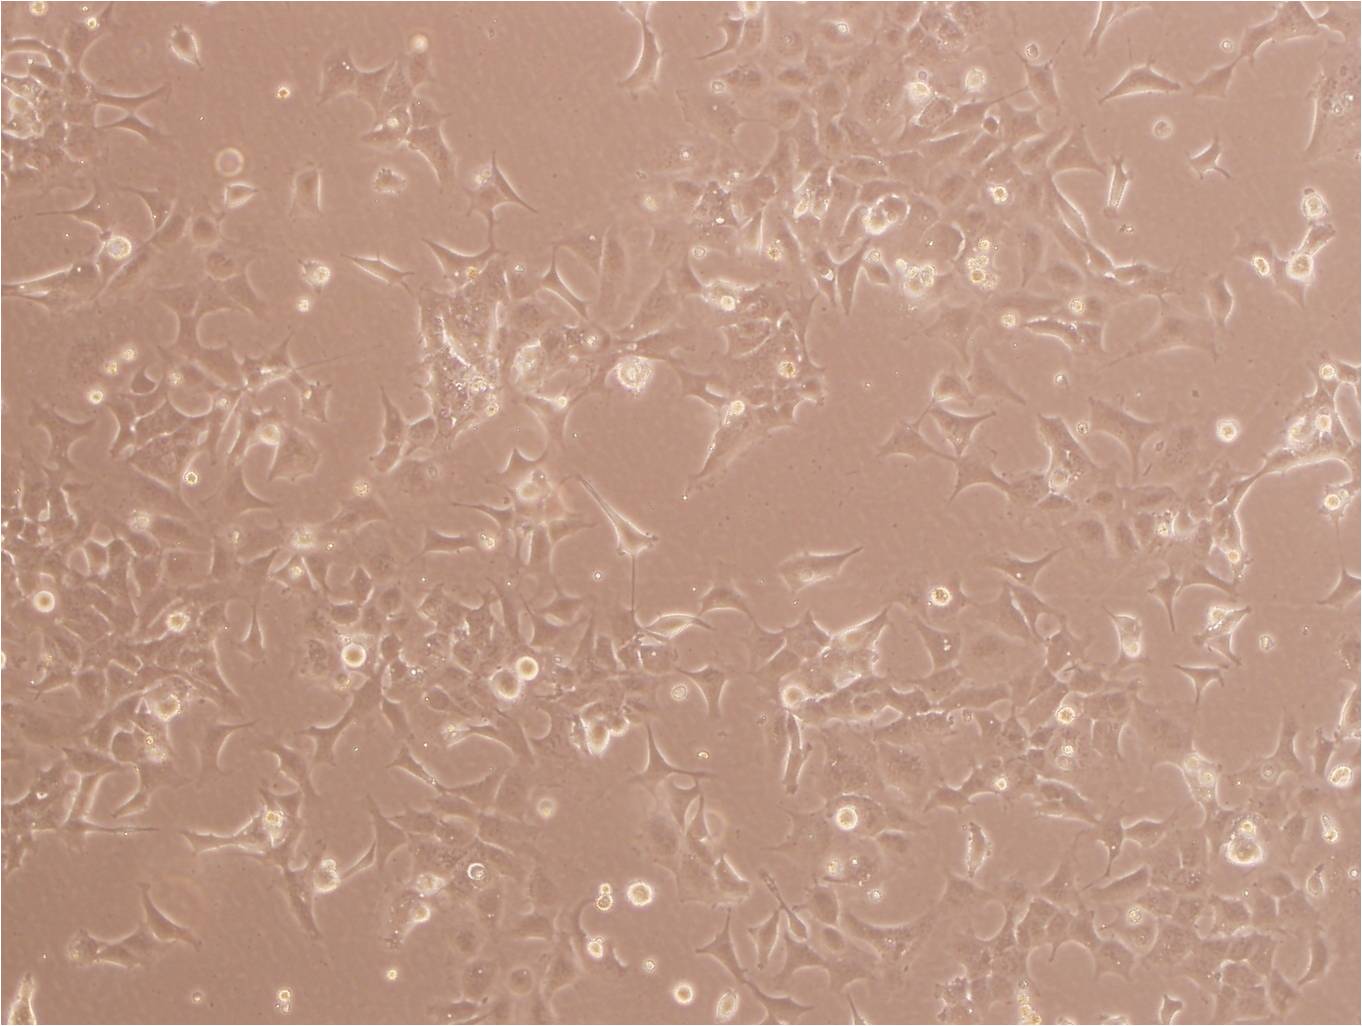 MBT-2:小鼠膀胱癌复苏细胞(提供STR鉴定图谱),MBT-2